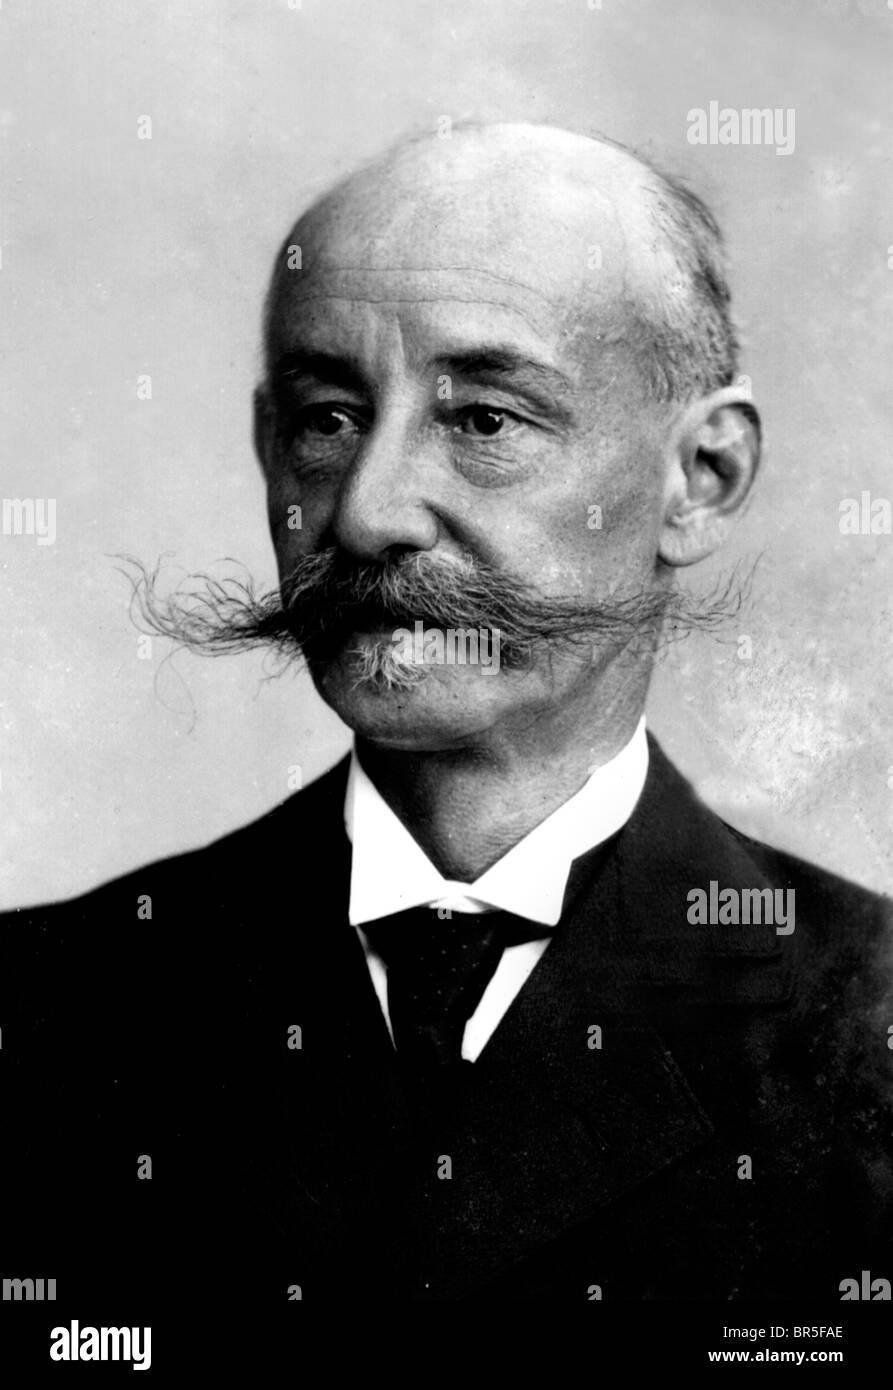 Fotografia storica, vecchio uomo con i baffi, circa 1919 Foto Stock